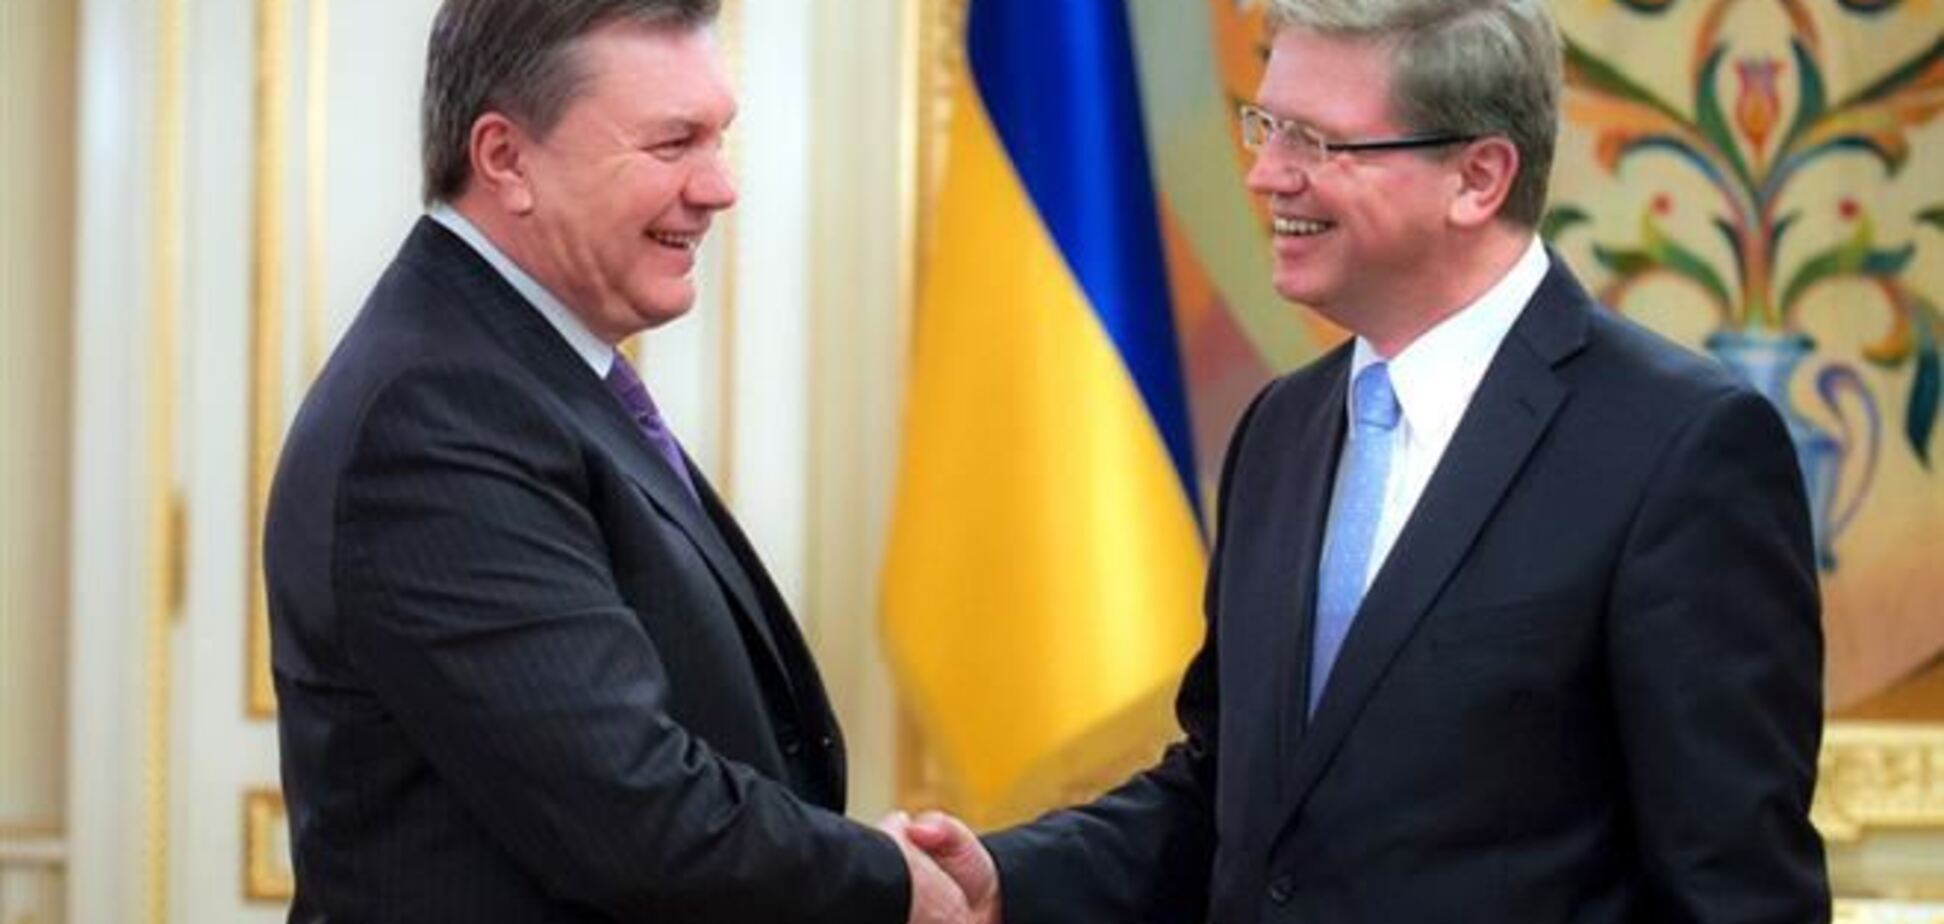 Янукович на встрече с Фюле: ЕС должен объективно оценивать ситуацию в Украине